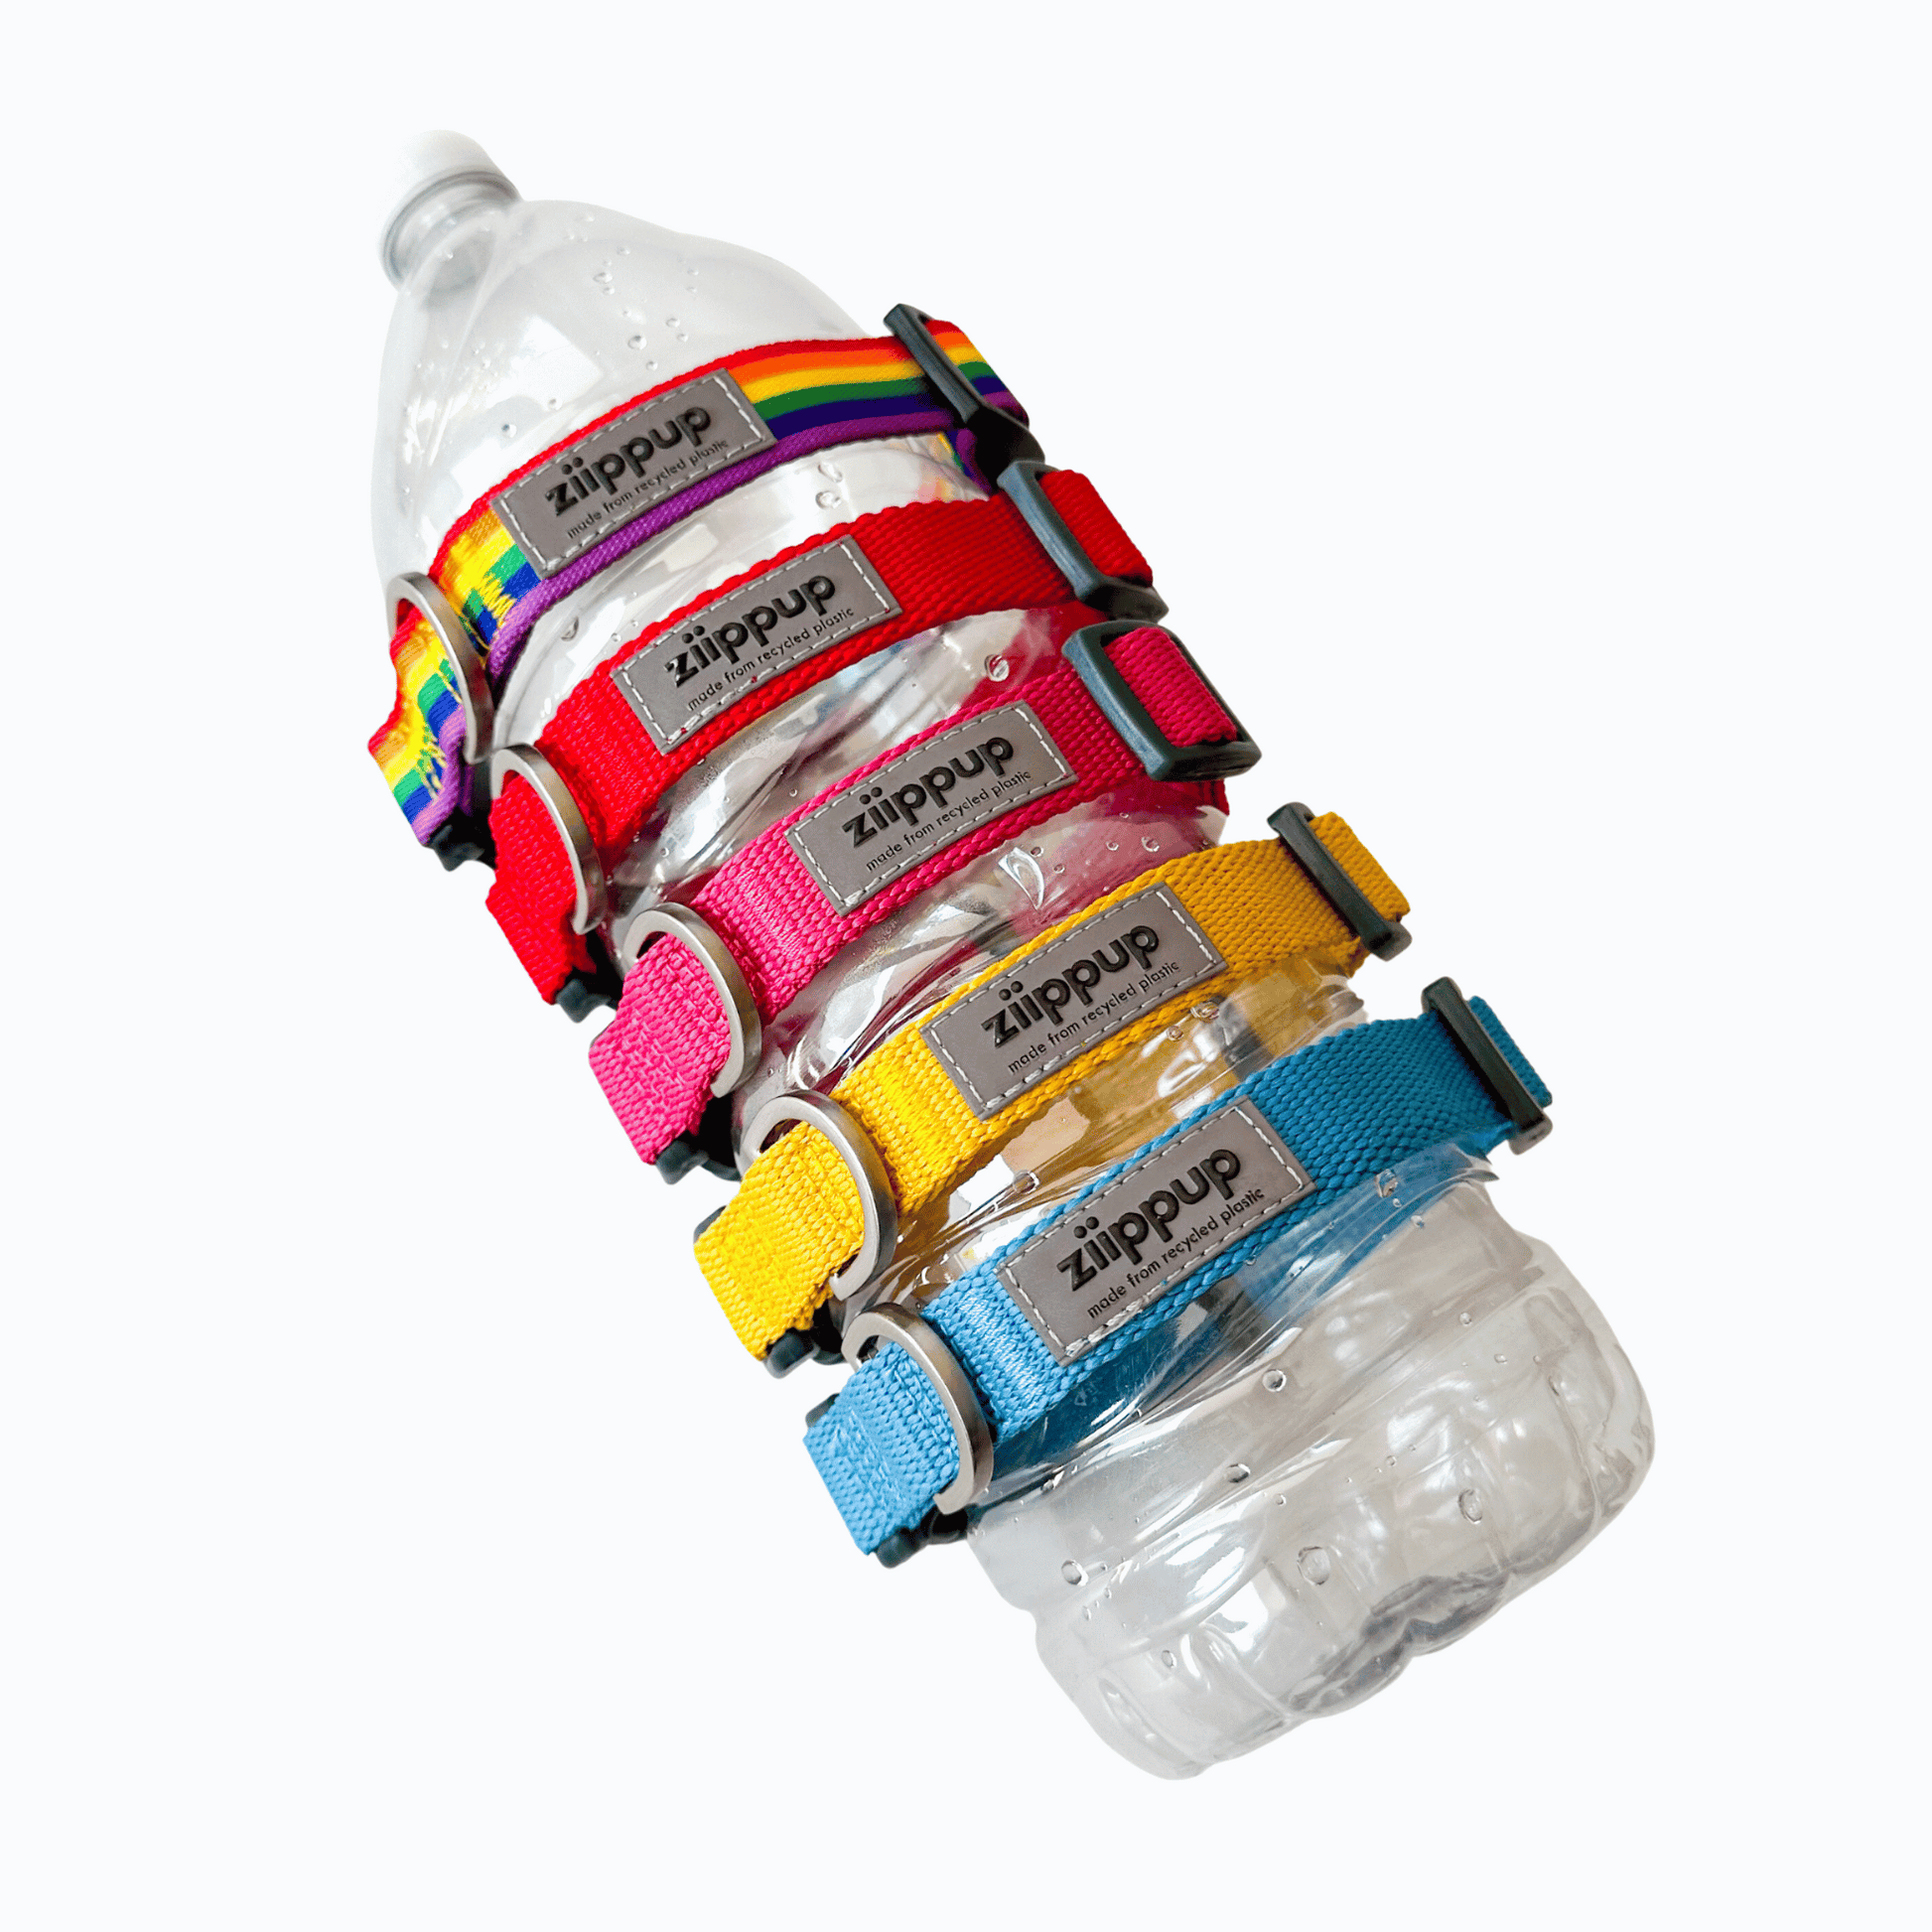 Ziippup dog collars displayed on plastic bottle